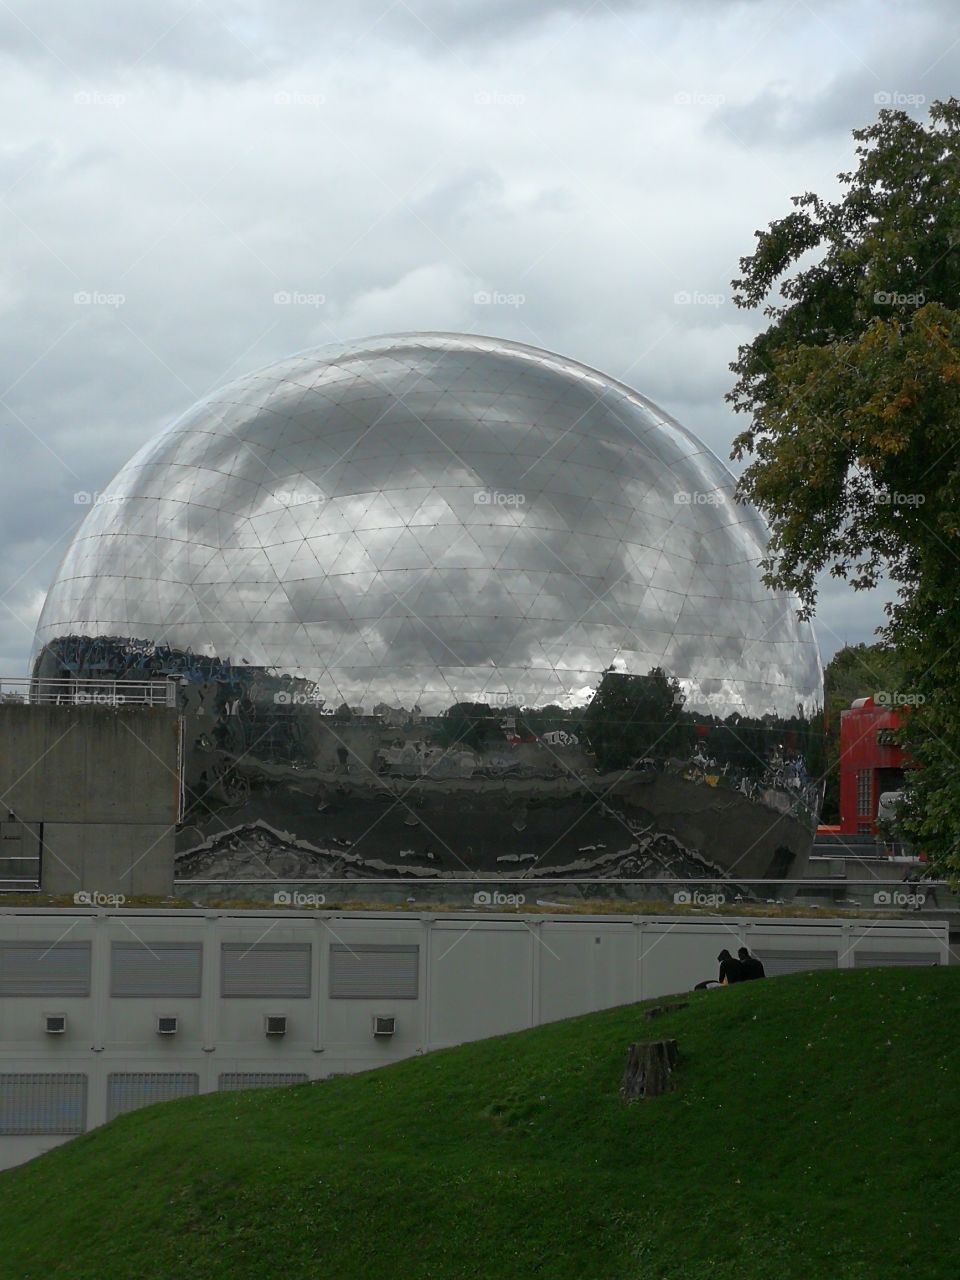 the Cité des Sciences in Paris